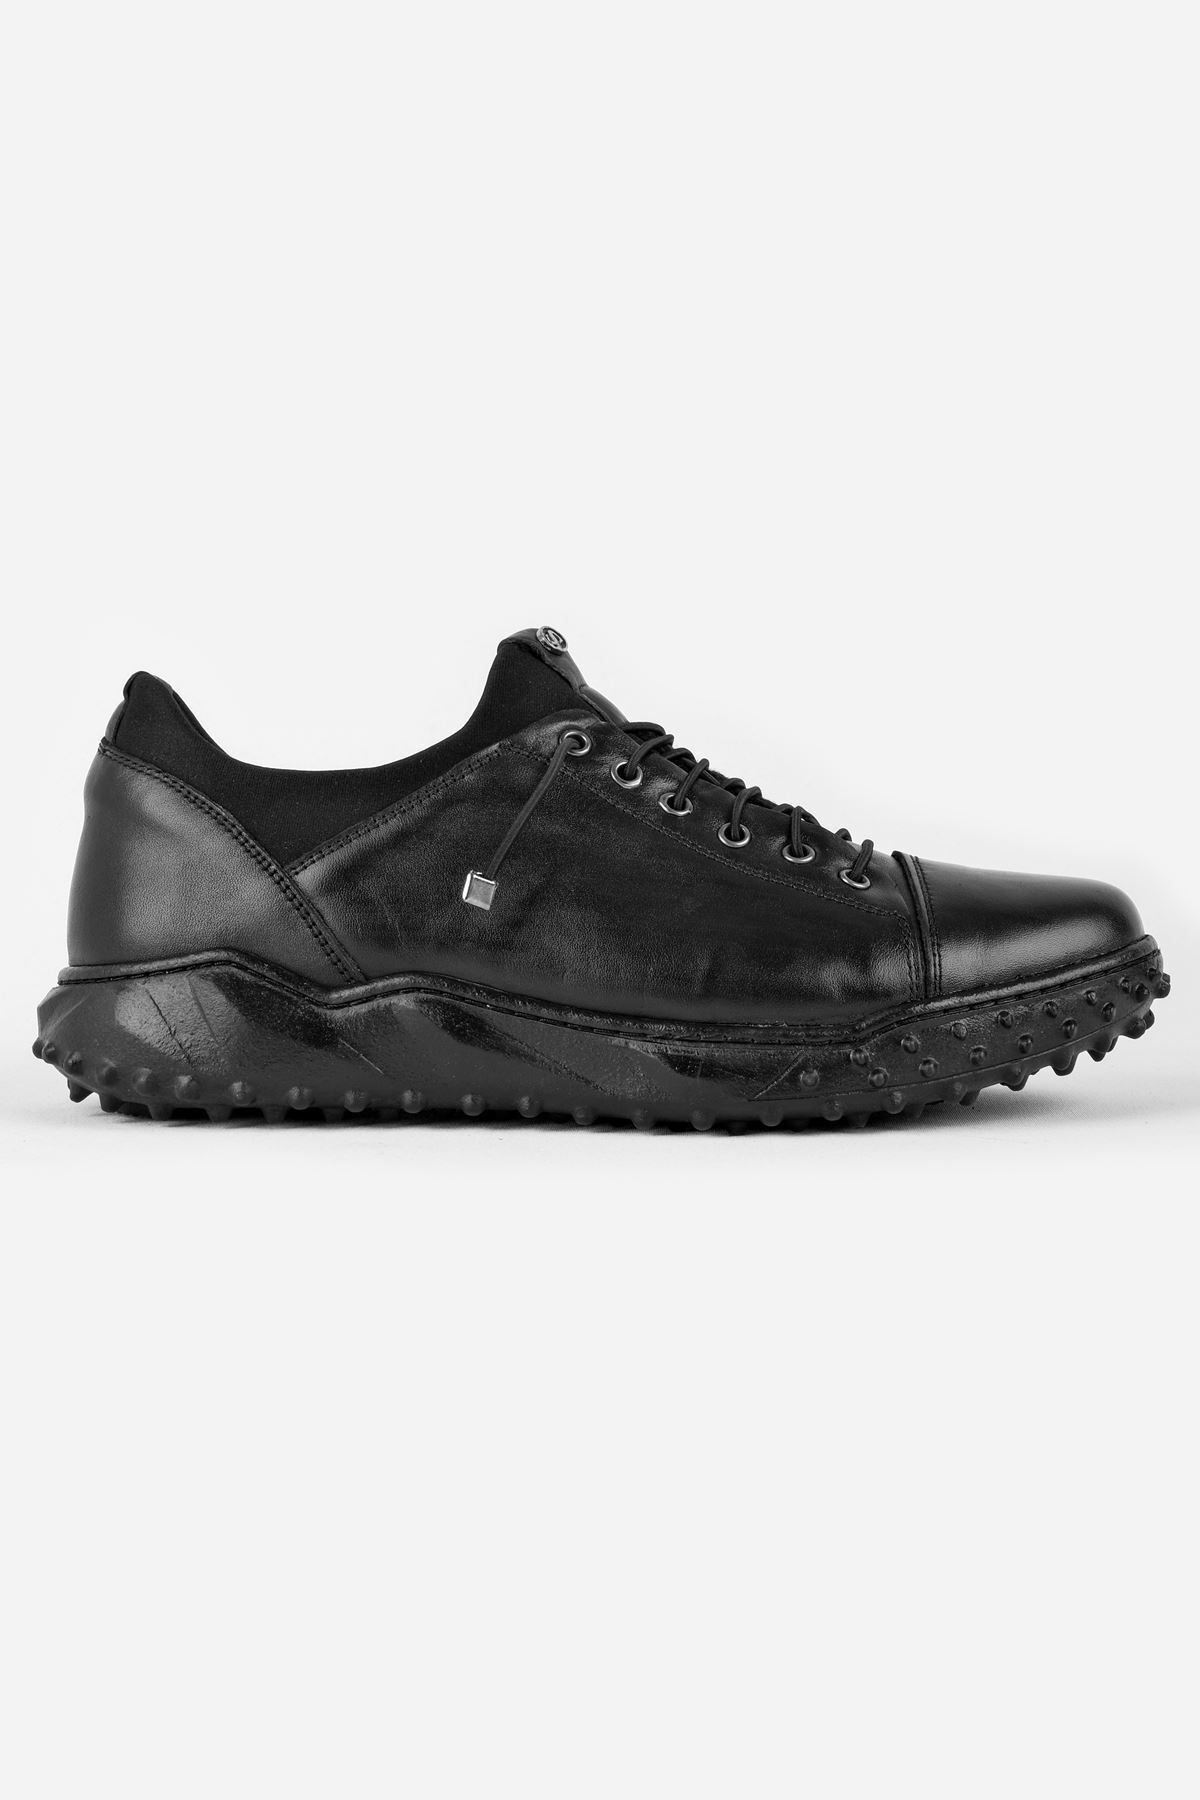 LAL SHOES & BAGS Karmen Erkek Deri Lastik Detaylı Günlük Ayakkabı-siyah